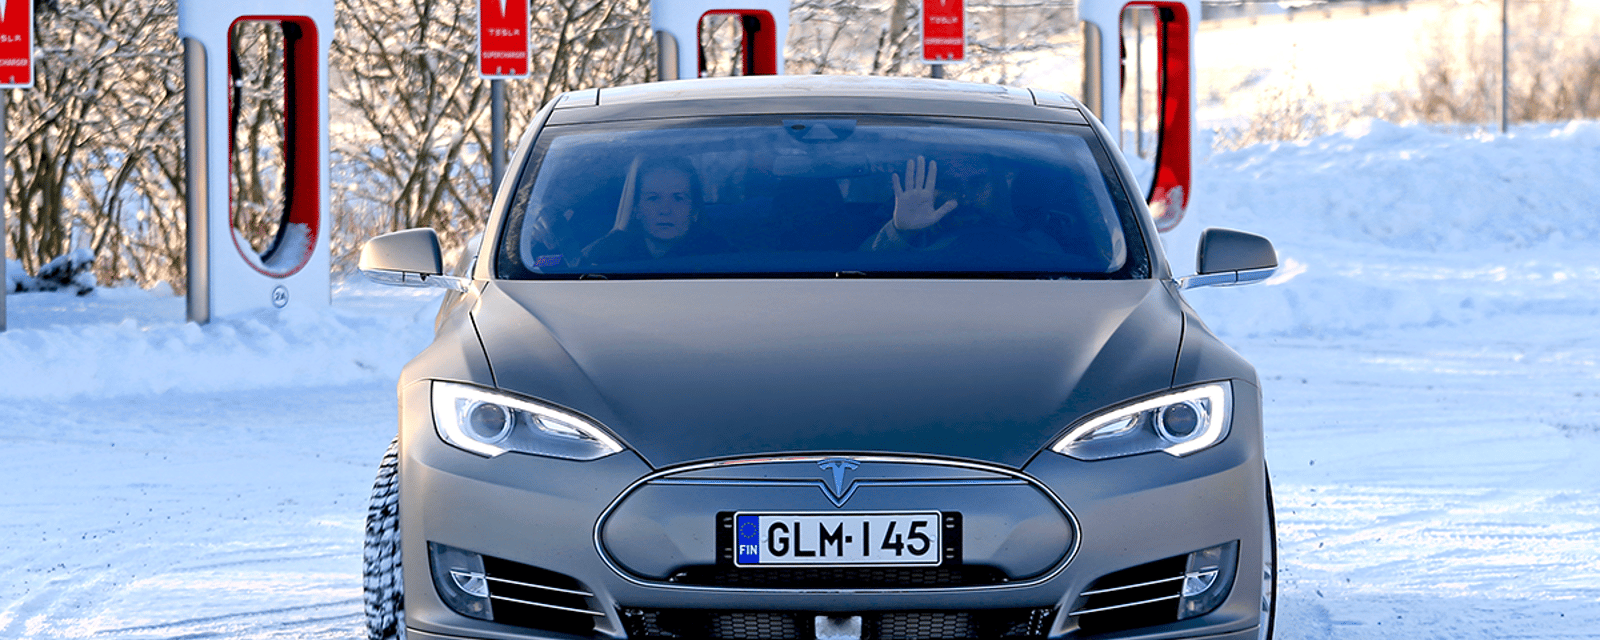 Des propriétaires de Tesla affirment avoir de la difficulté à charger leur voiture à cause du froid